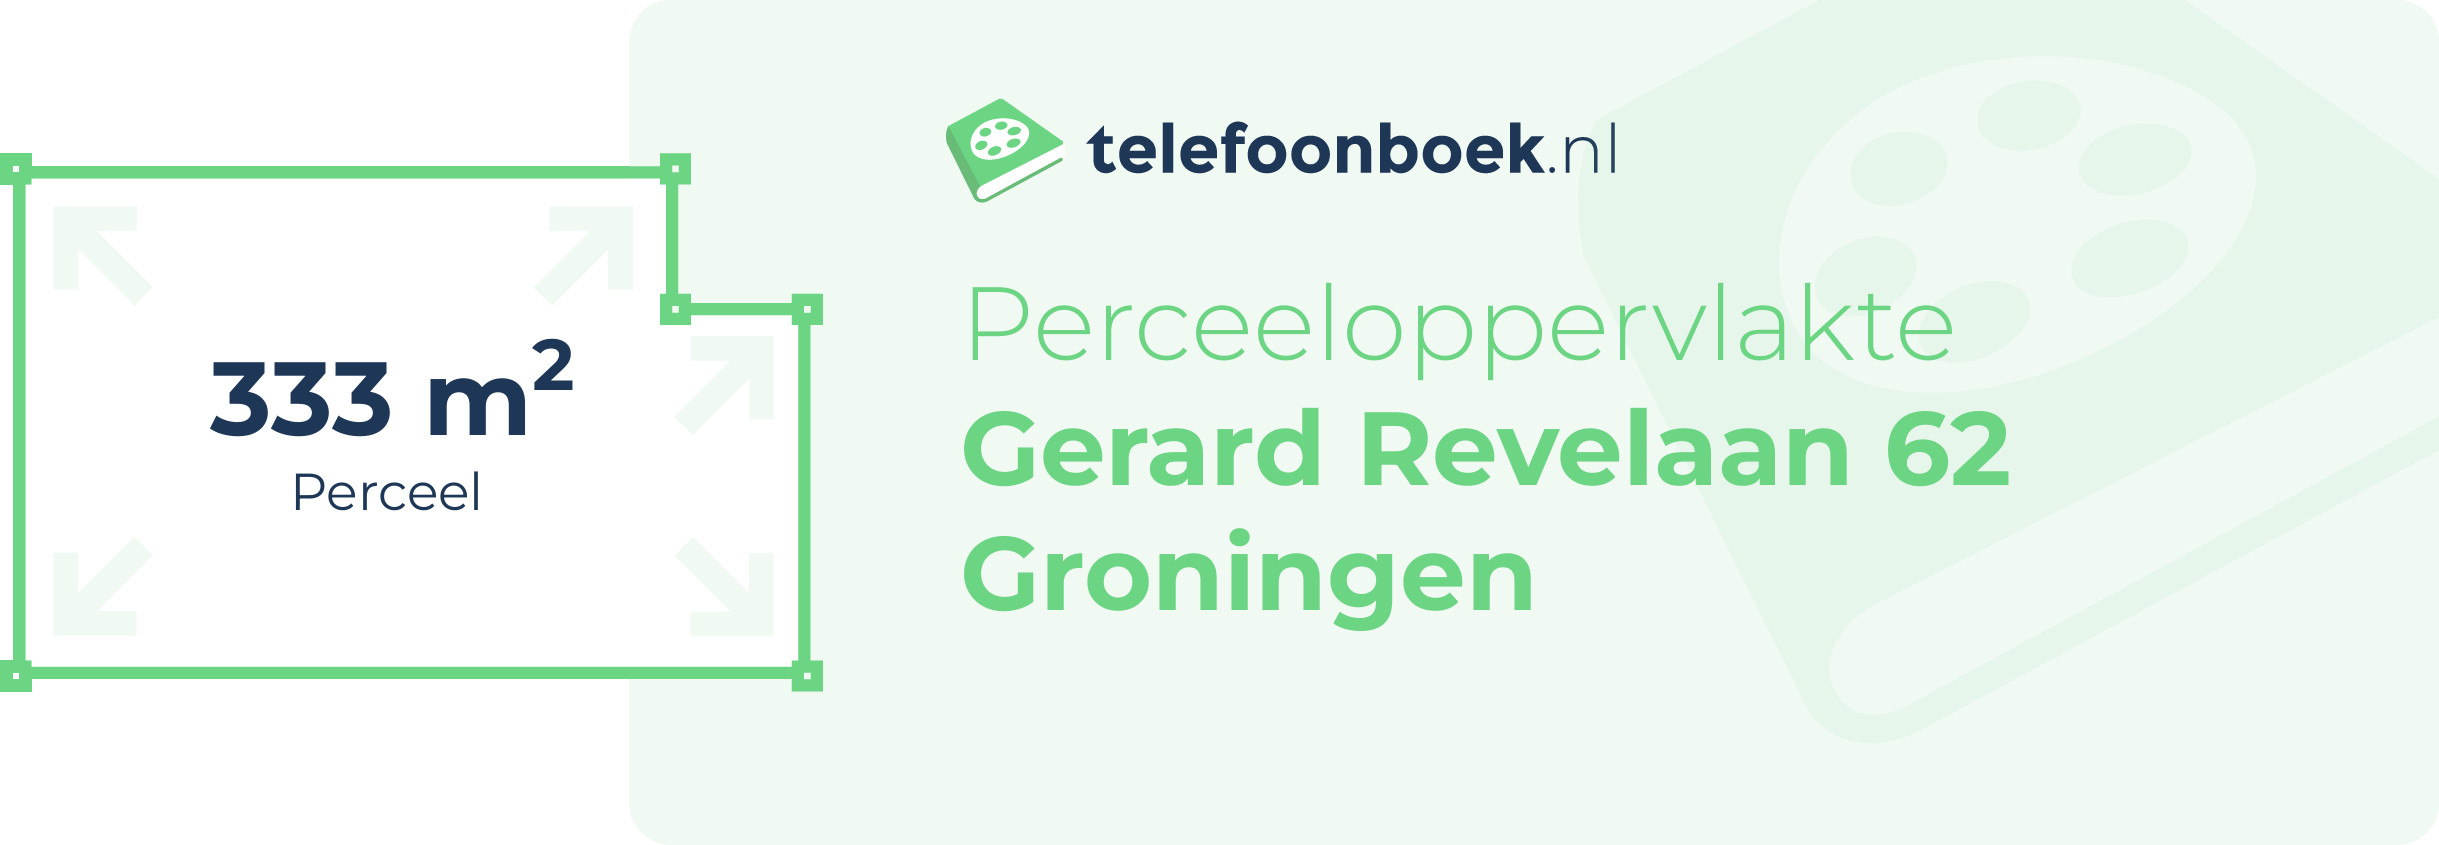 Perceeloppervlakte Gerard Revelaan 62 Groningen